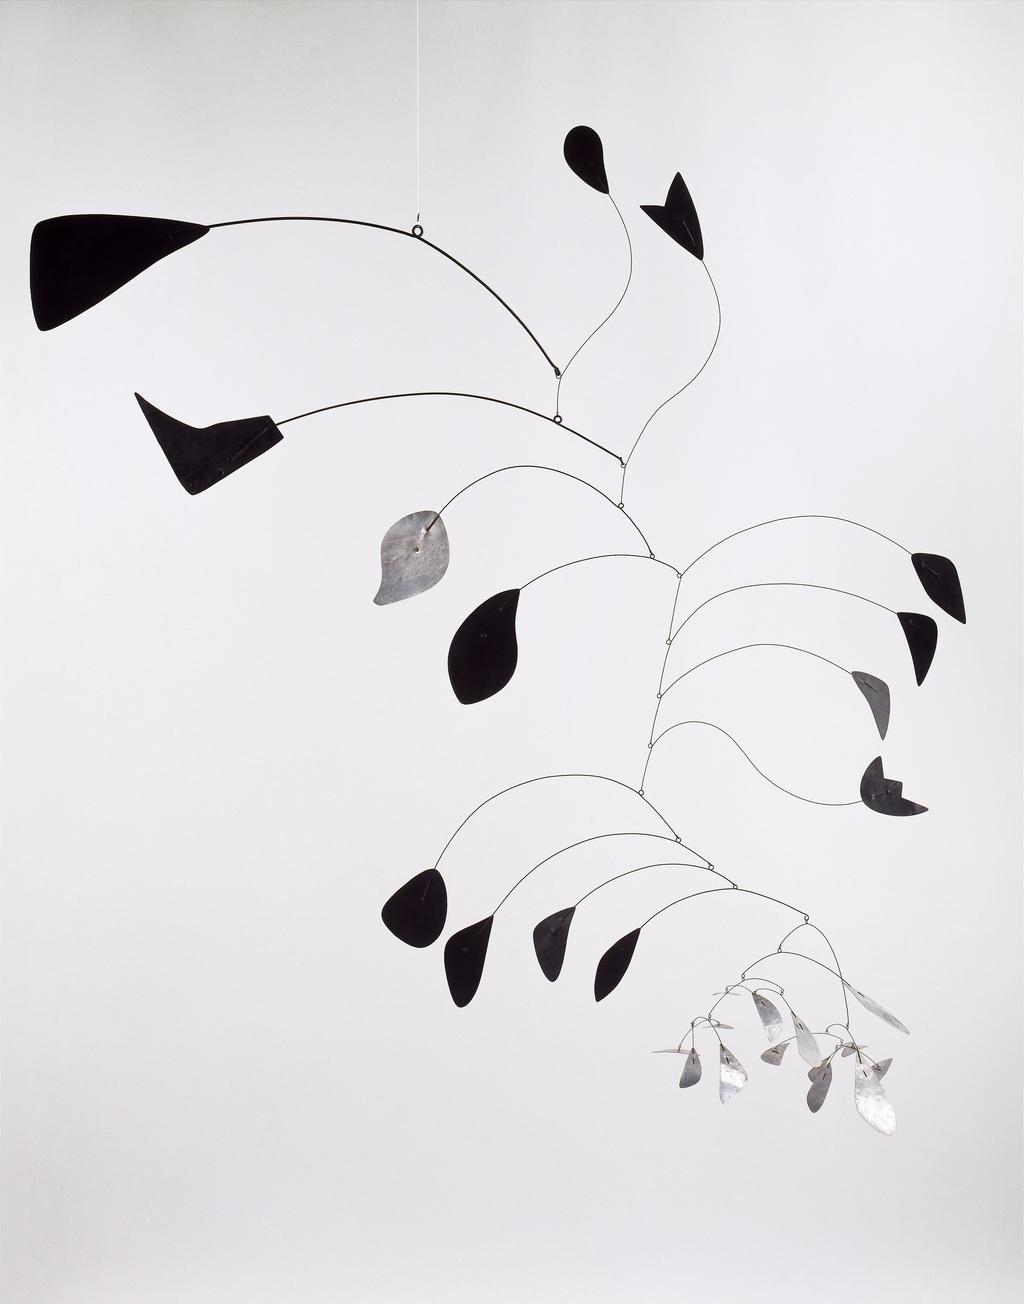 Alexander Calder, Arc of Petals, 1941.